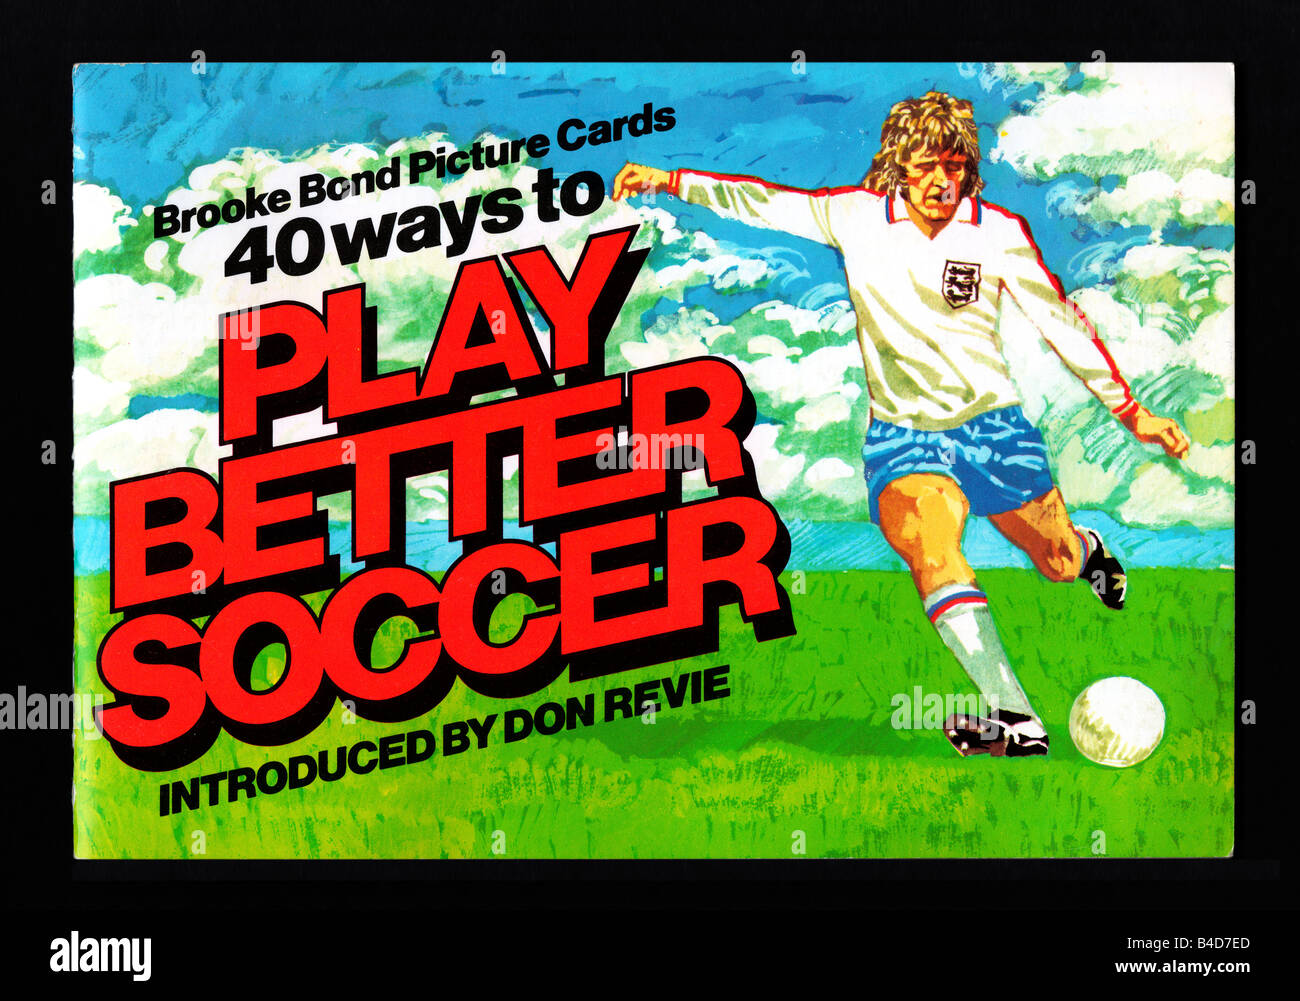 Brooke Bond PG Tips Bildkarte Album, 40 Möglichkeiten, um besser Fußball spielen 16. August 1976 ausgestellt Stockfoto